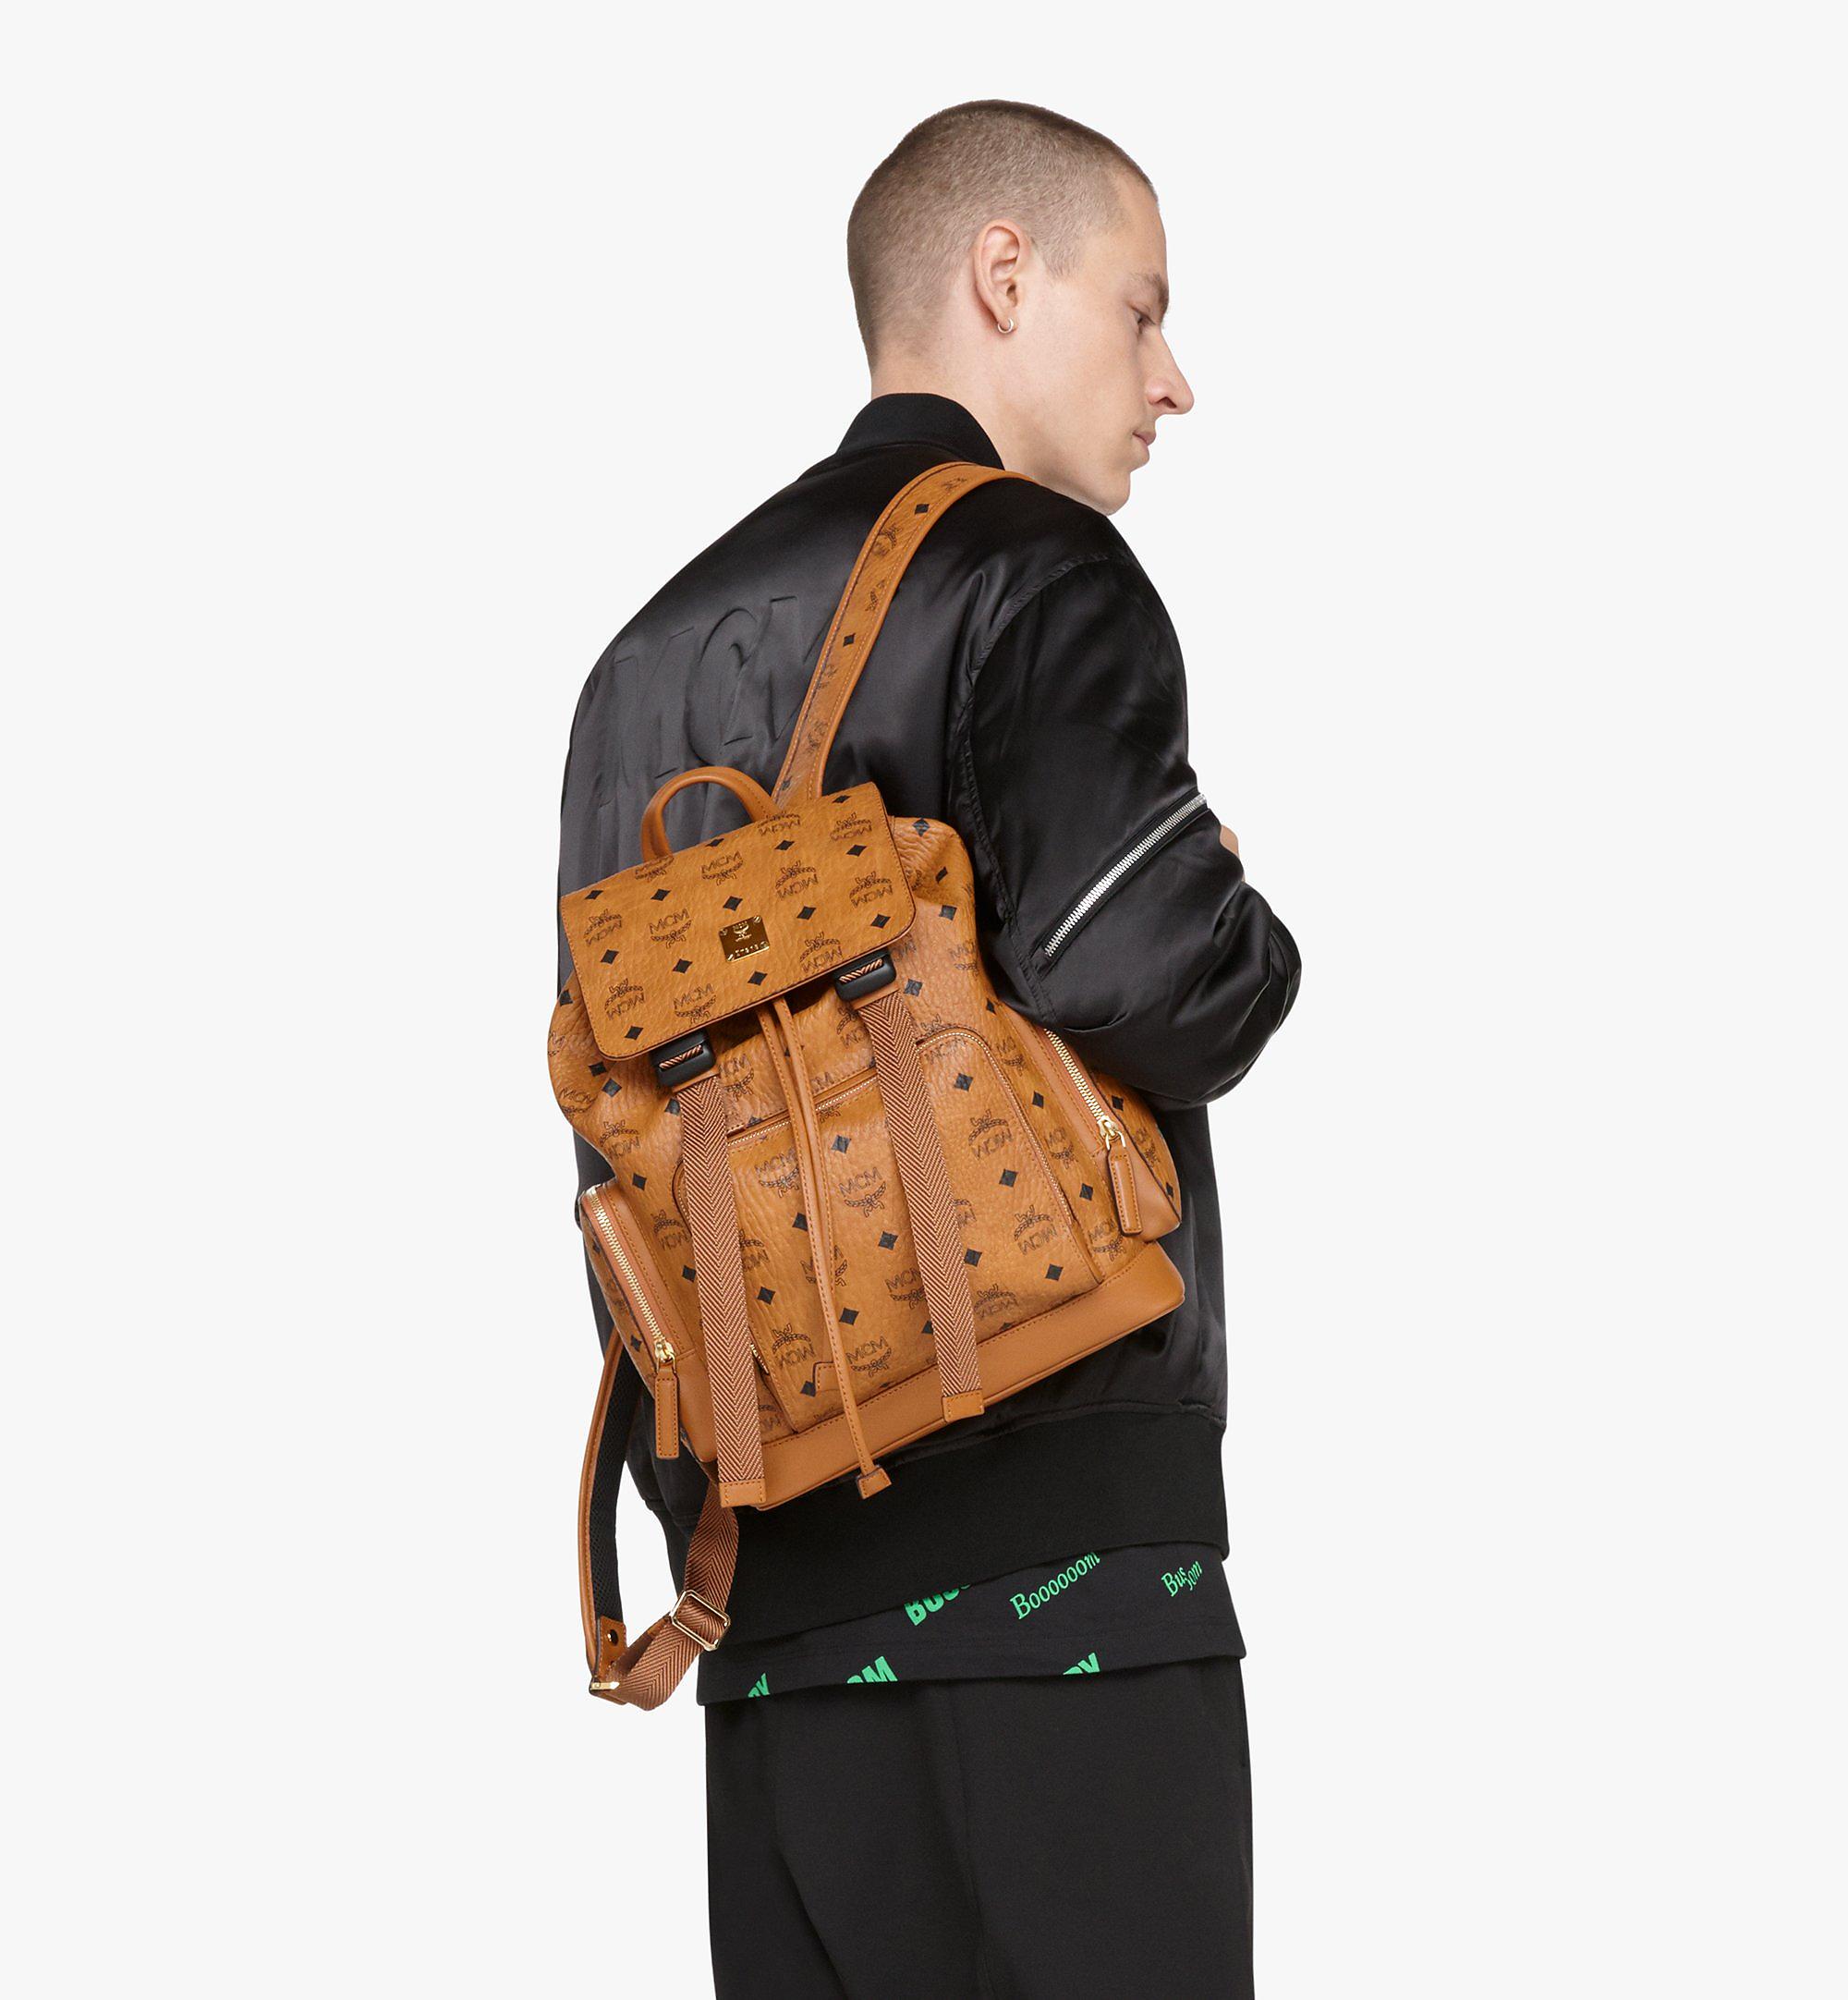 Mcm Men's Brandenburg Backpack in Visetos - Brown - Backpacks